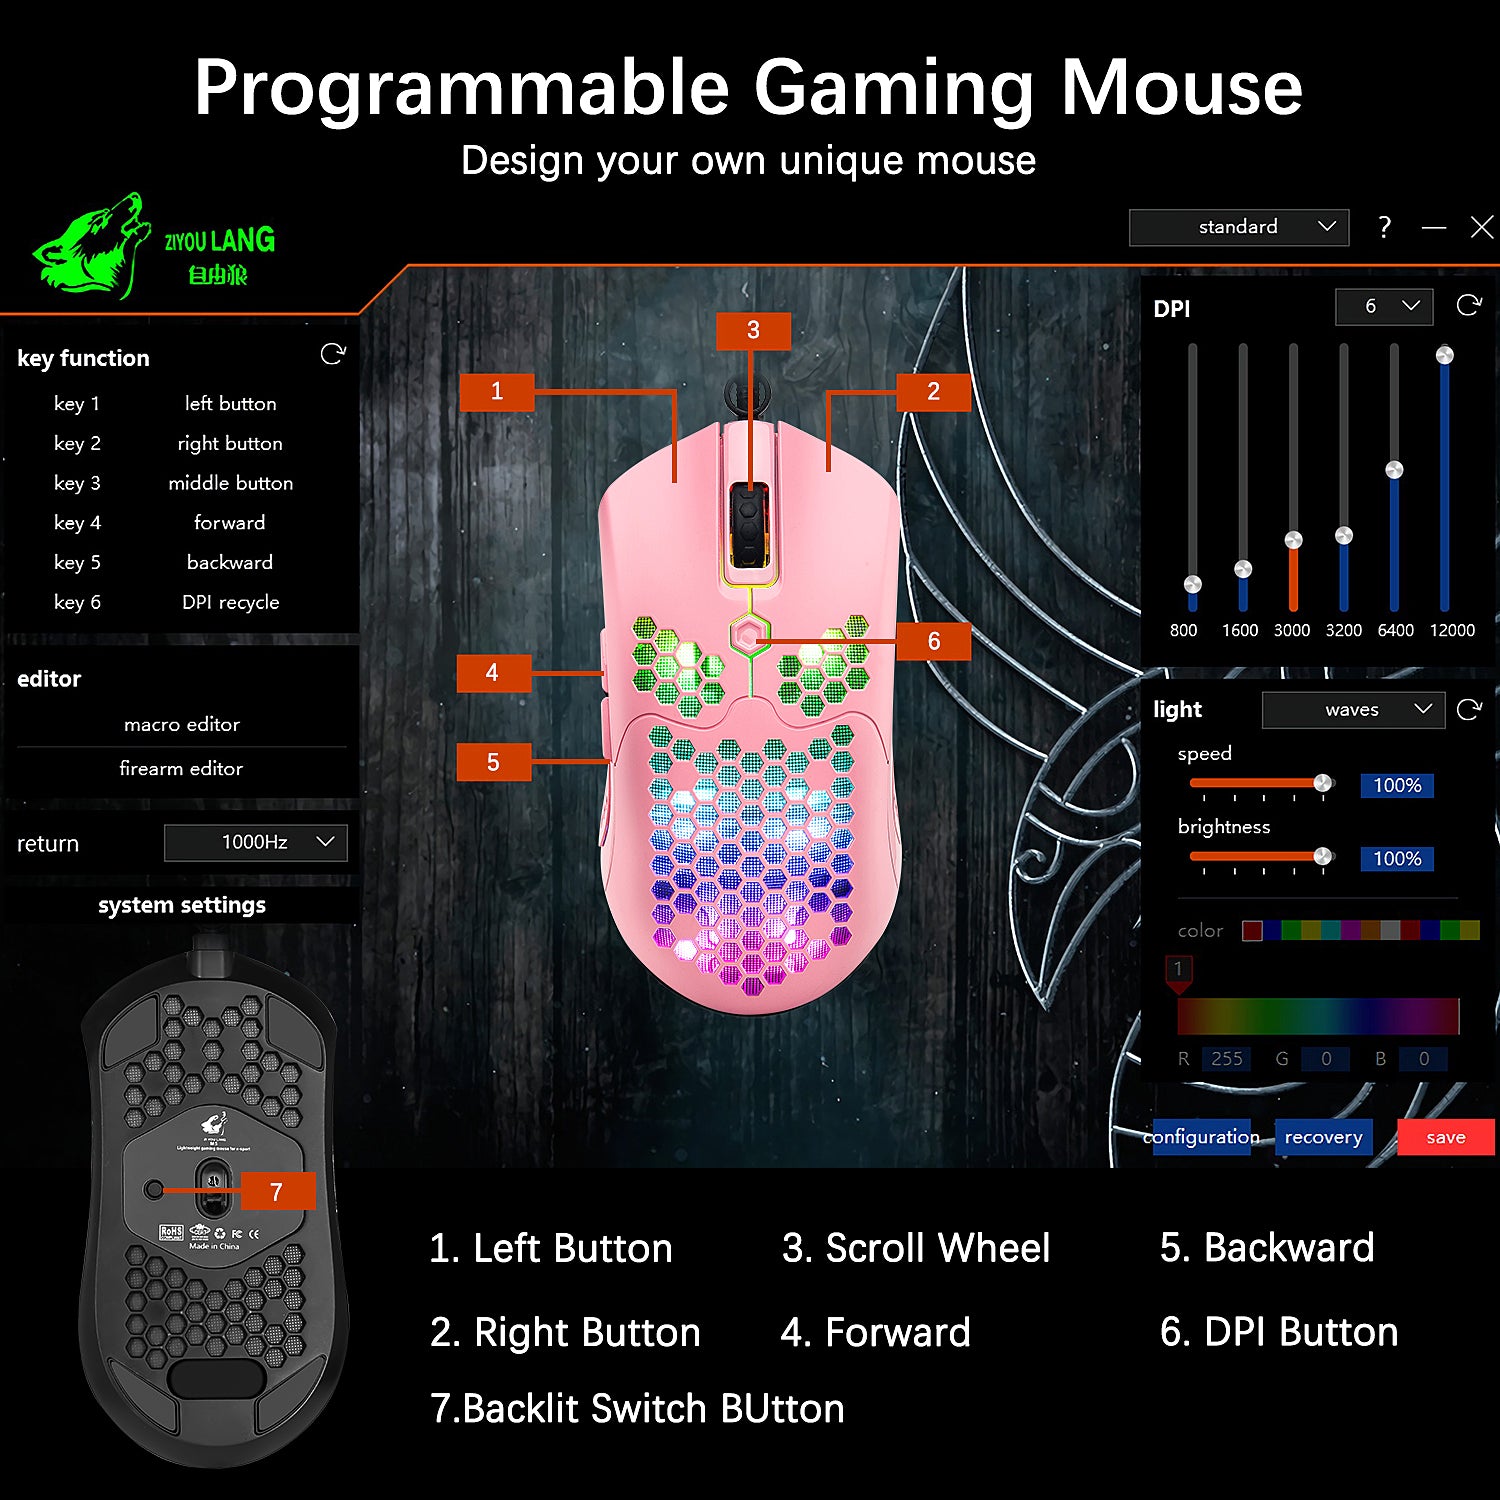 Ratón ligero para juegos con cable, 26 ratones retroiluminados RGB con controlador programable de 7 botones, ratón PAW3325 12000DPI, ratón ultraligero con cable Ultraweave para jugadores de PC, usuarios de Xbox PS4 (negro)